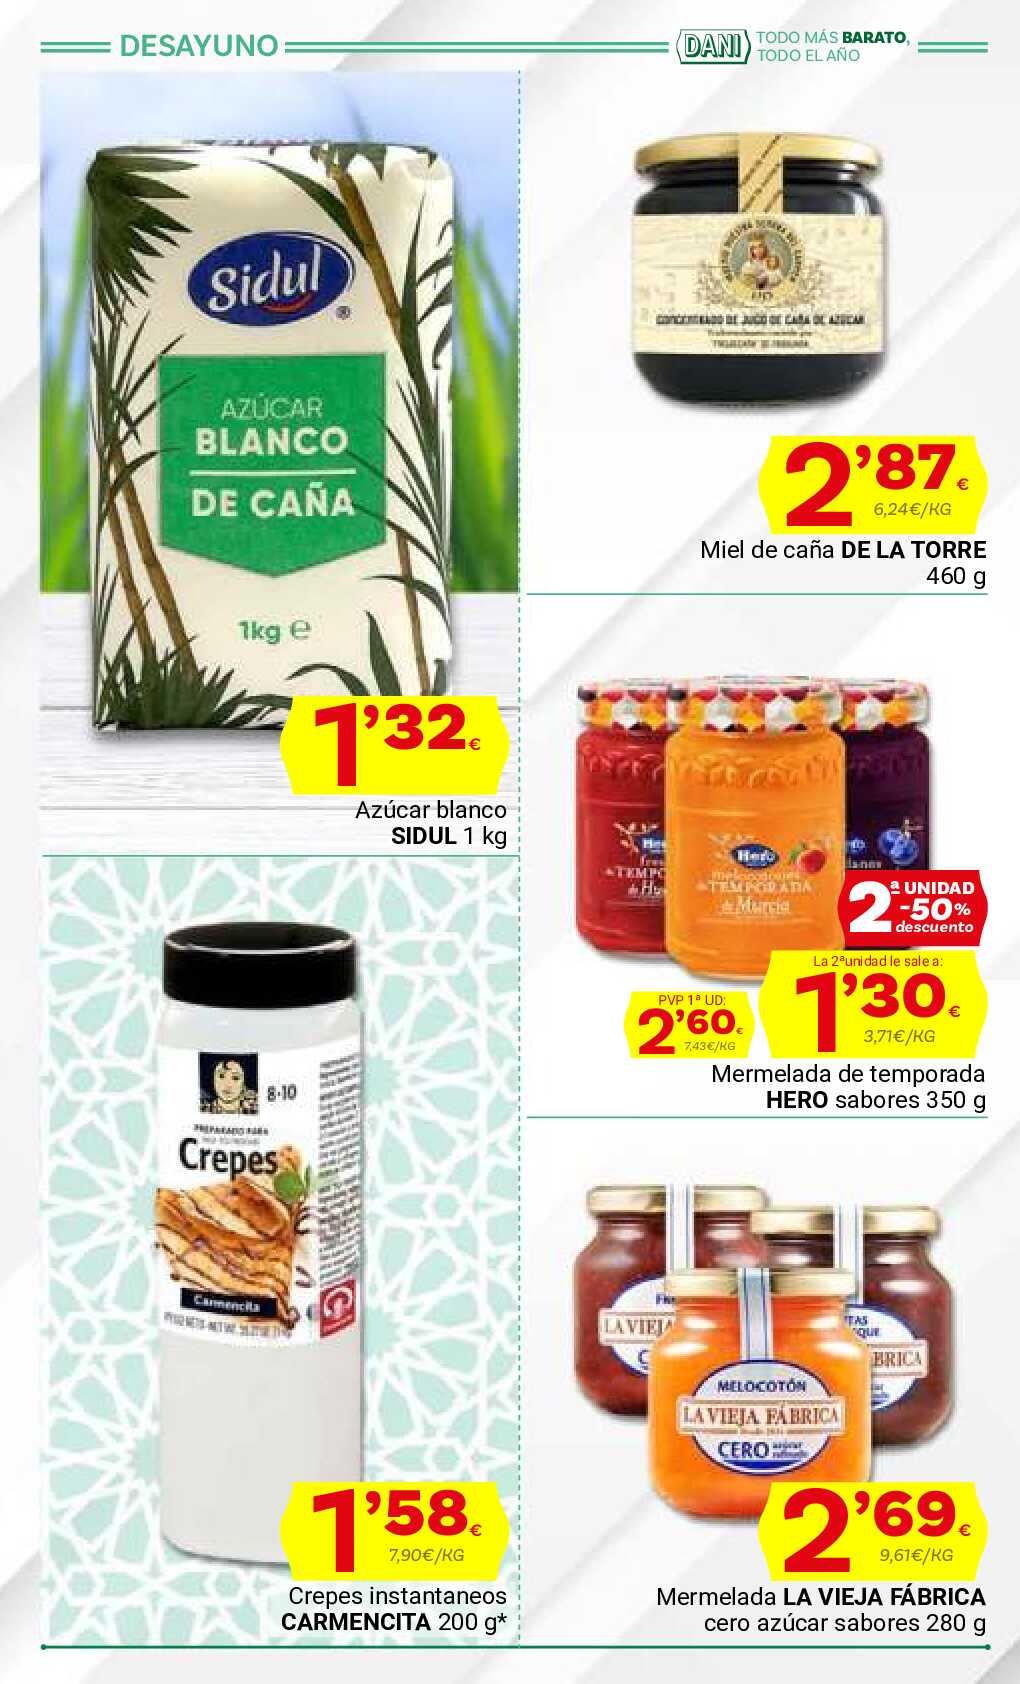 Ofertas con lo mejor de Andalucía Supermercado Dani. Página 12